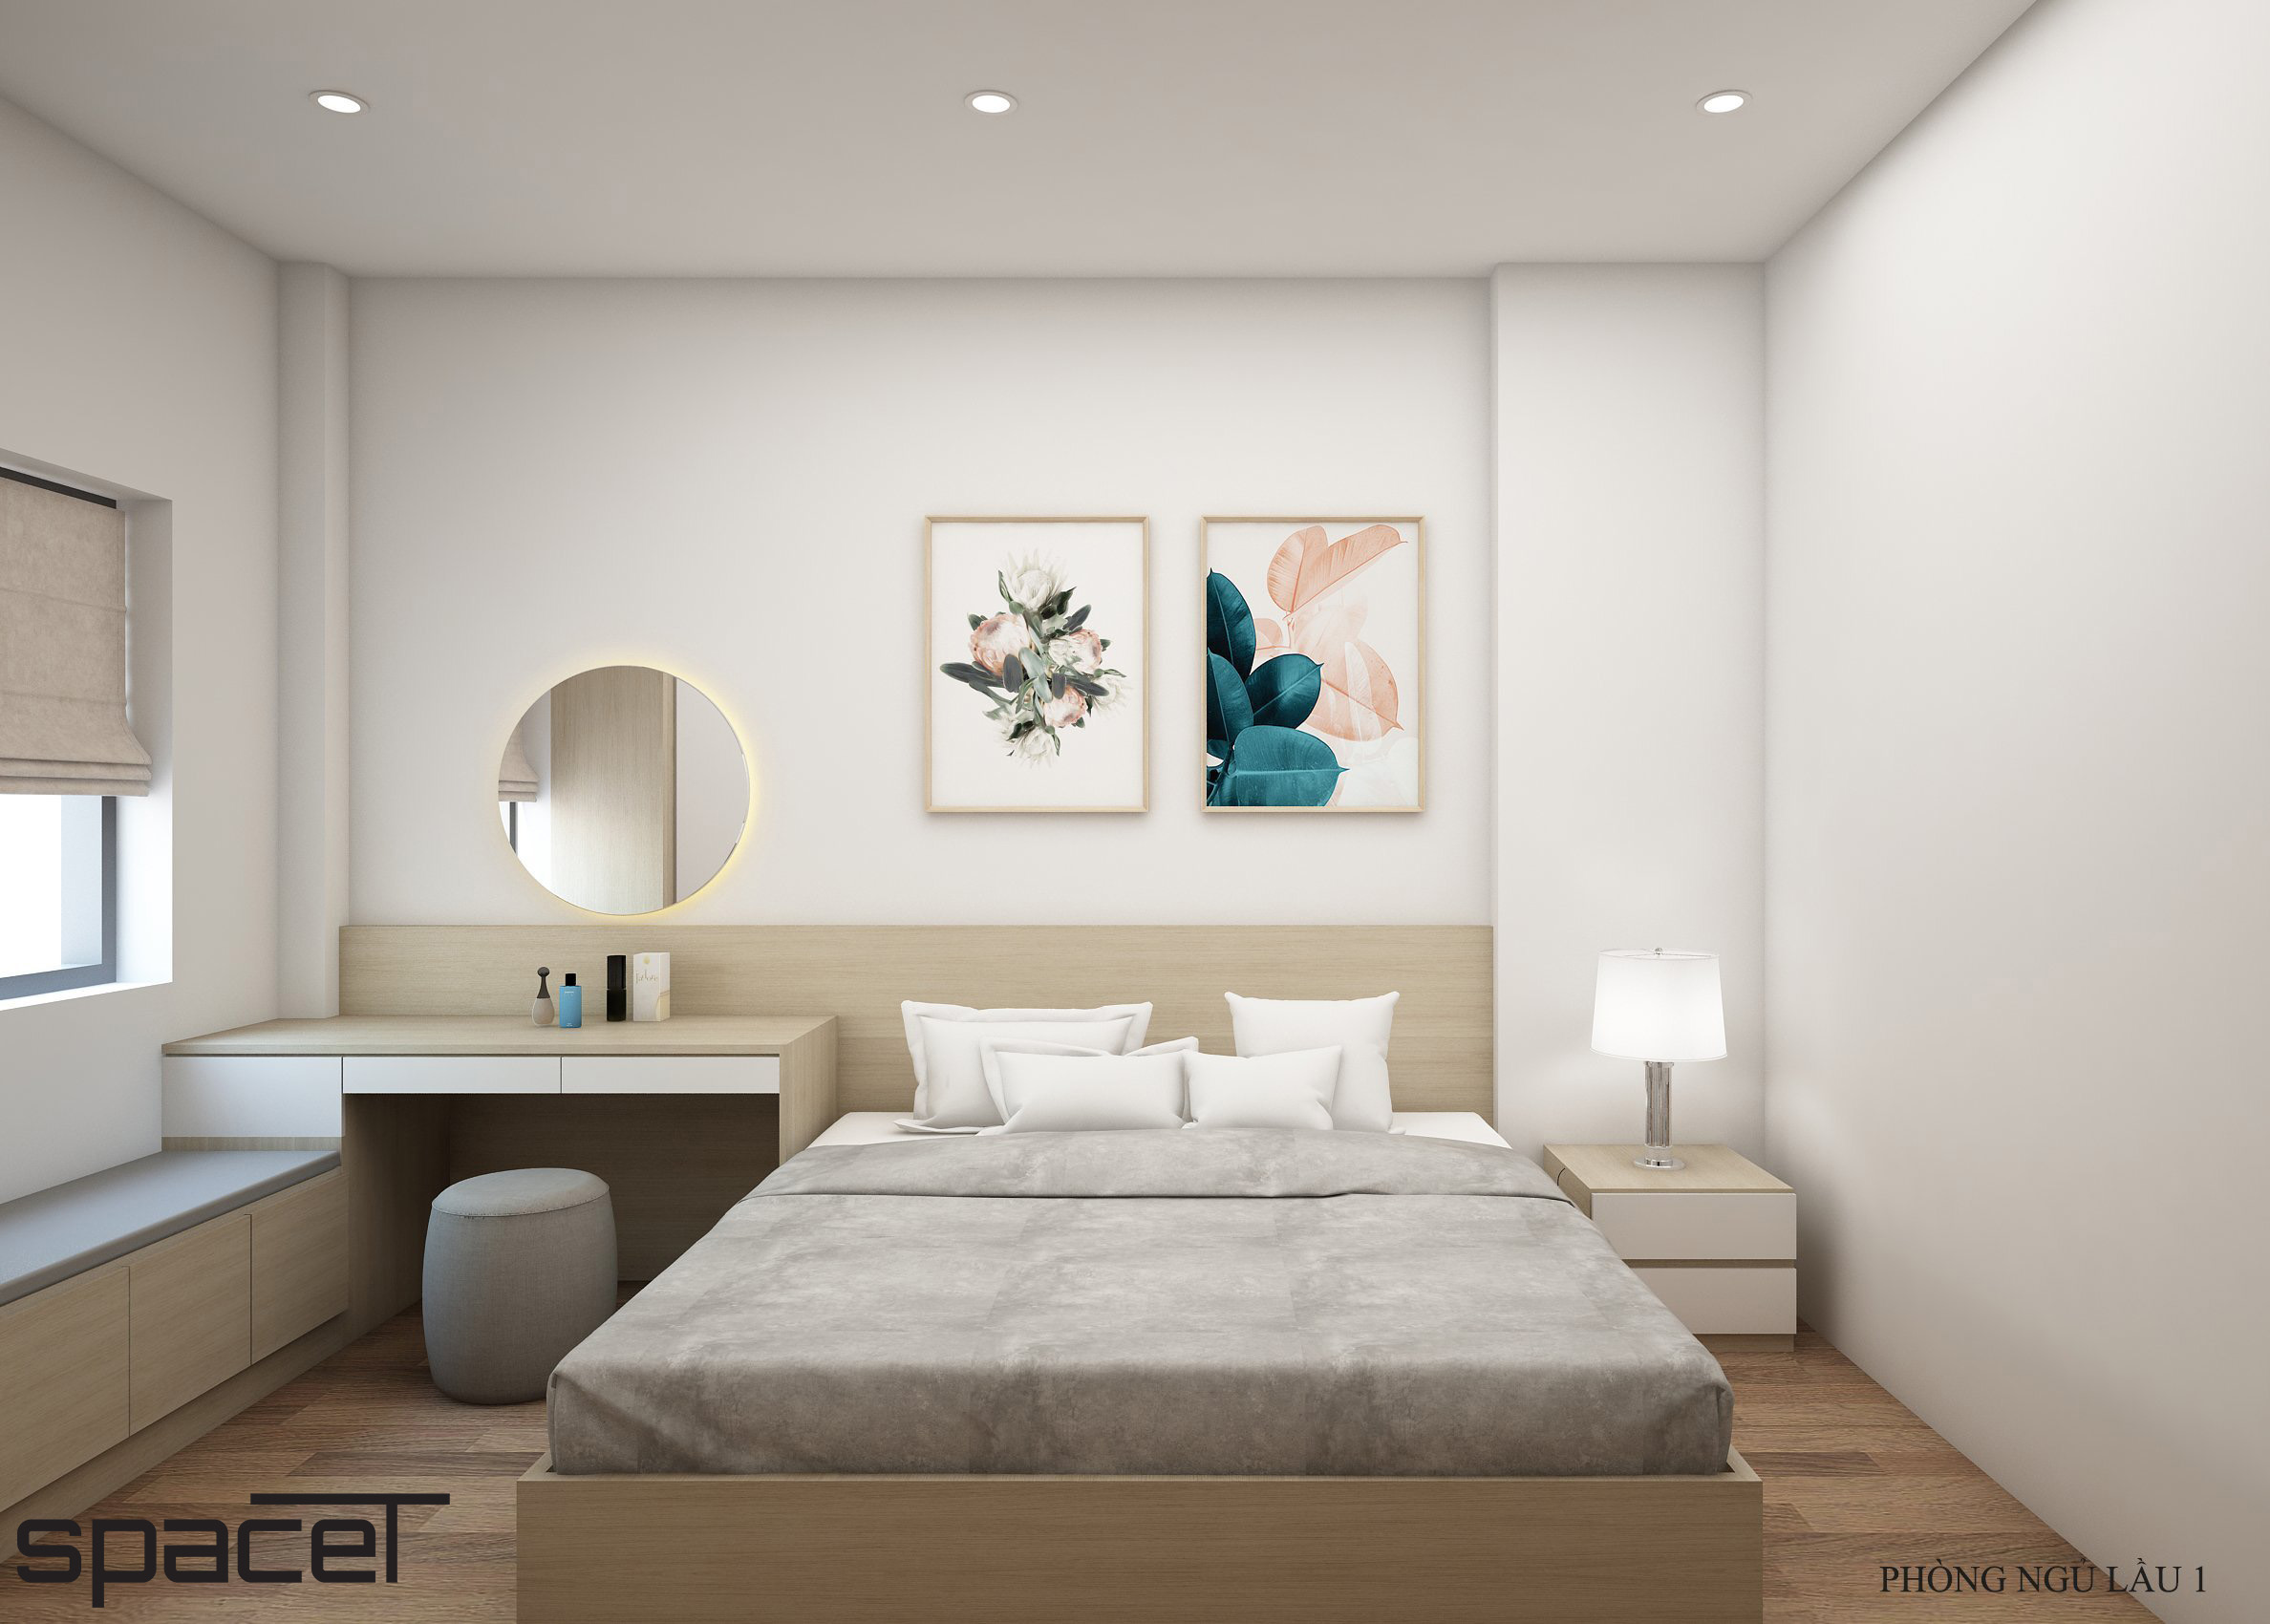 Phòng ngủ, phong cách Bắc Âu Scandinavian, thiết kế concept nội thất, nhà phố Thủ Đức